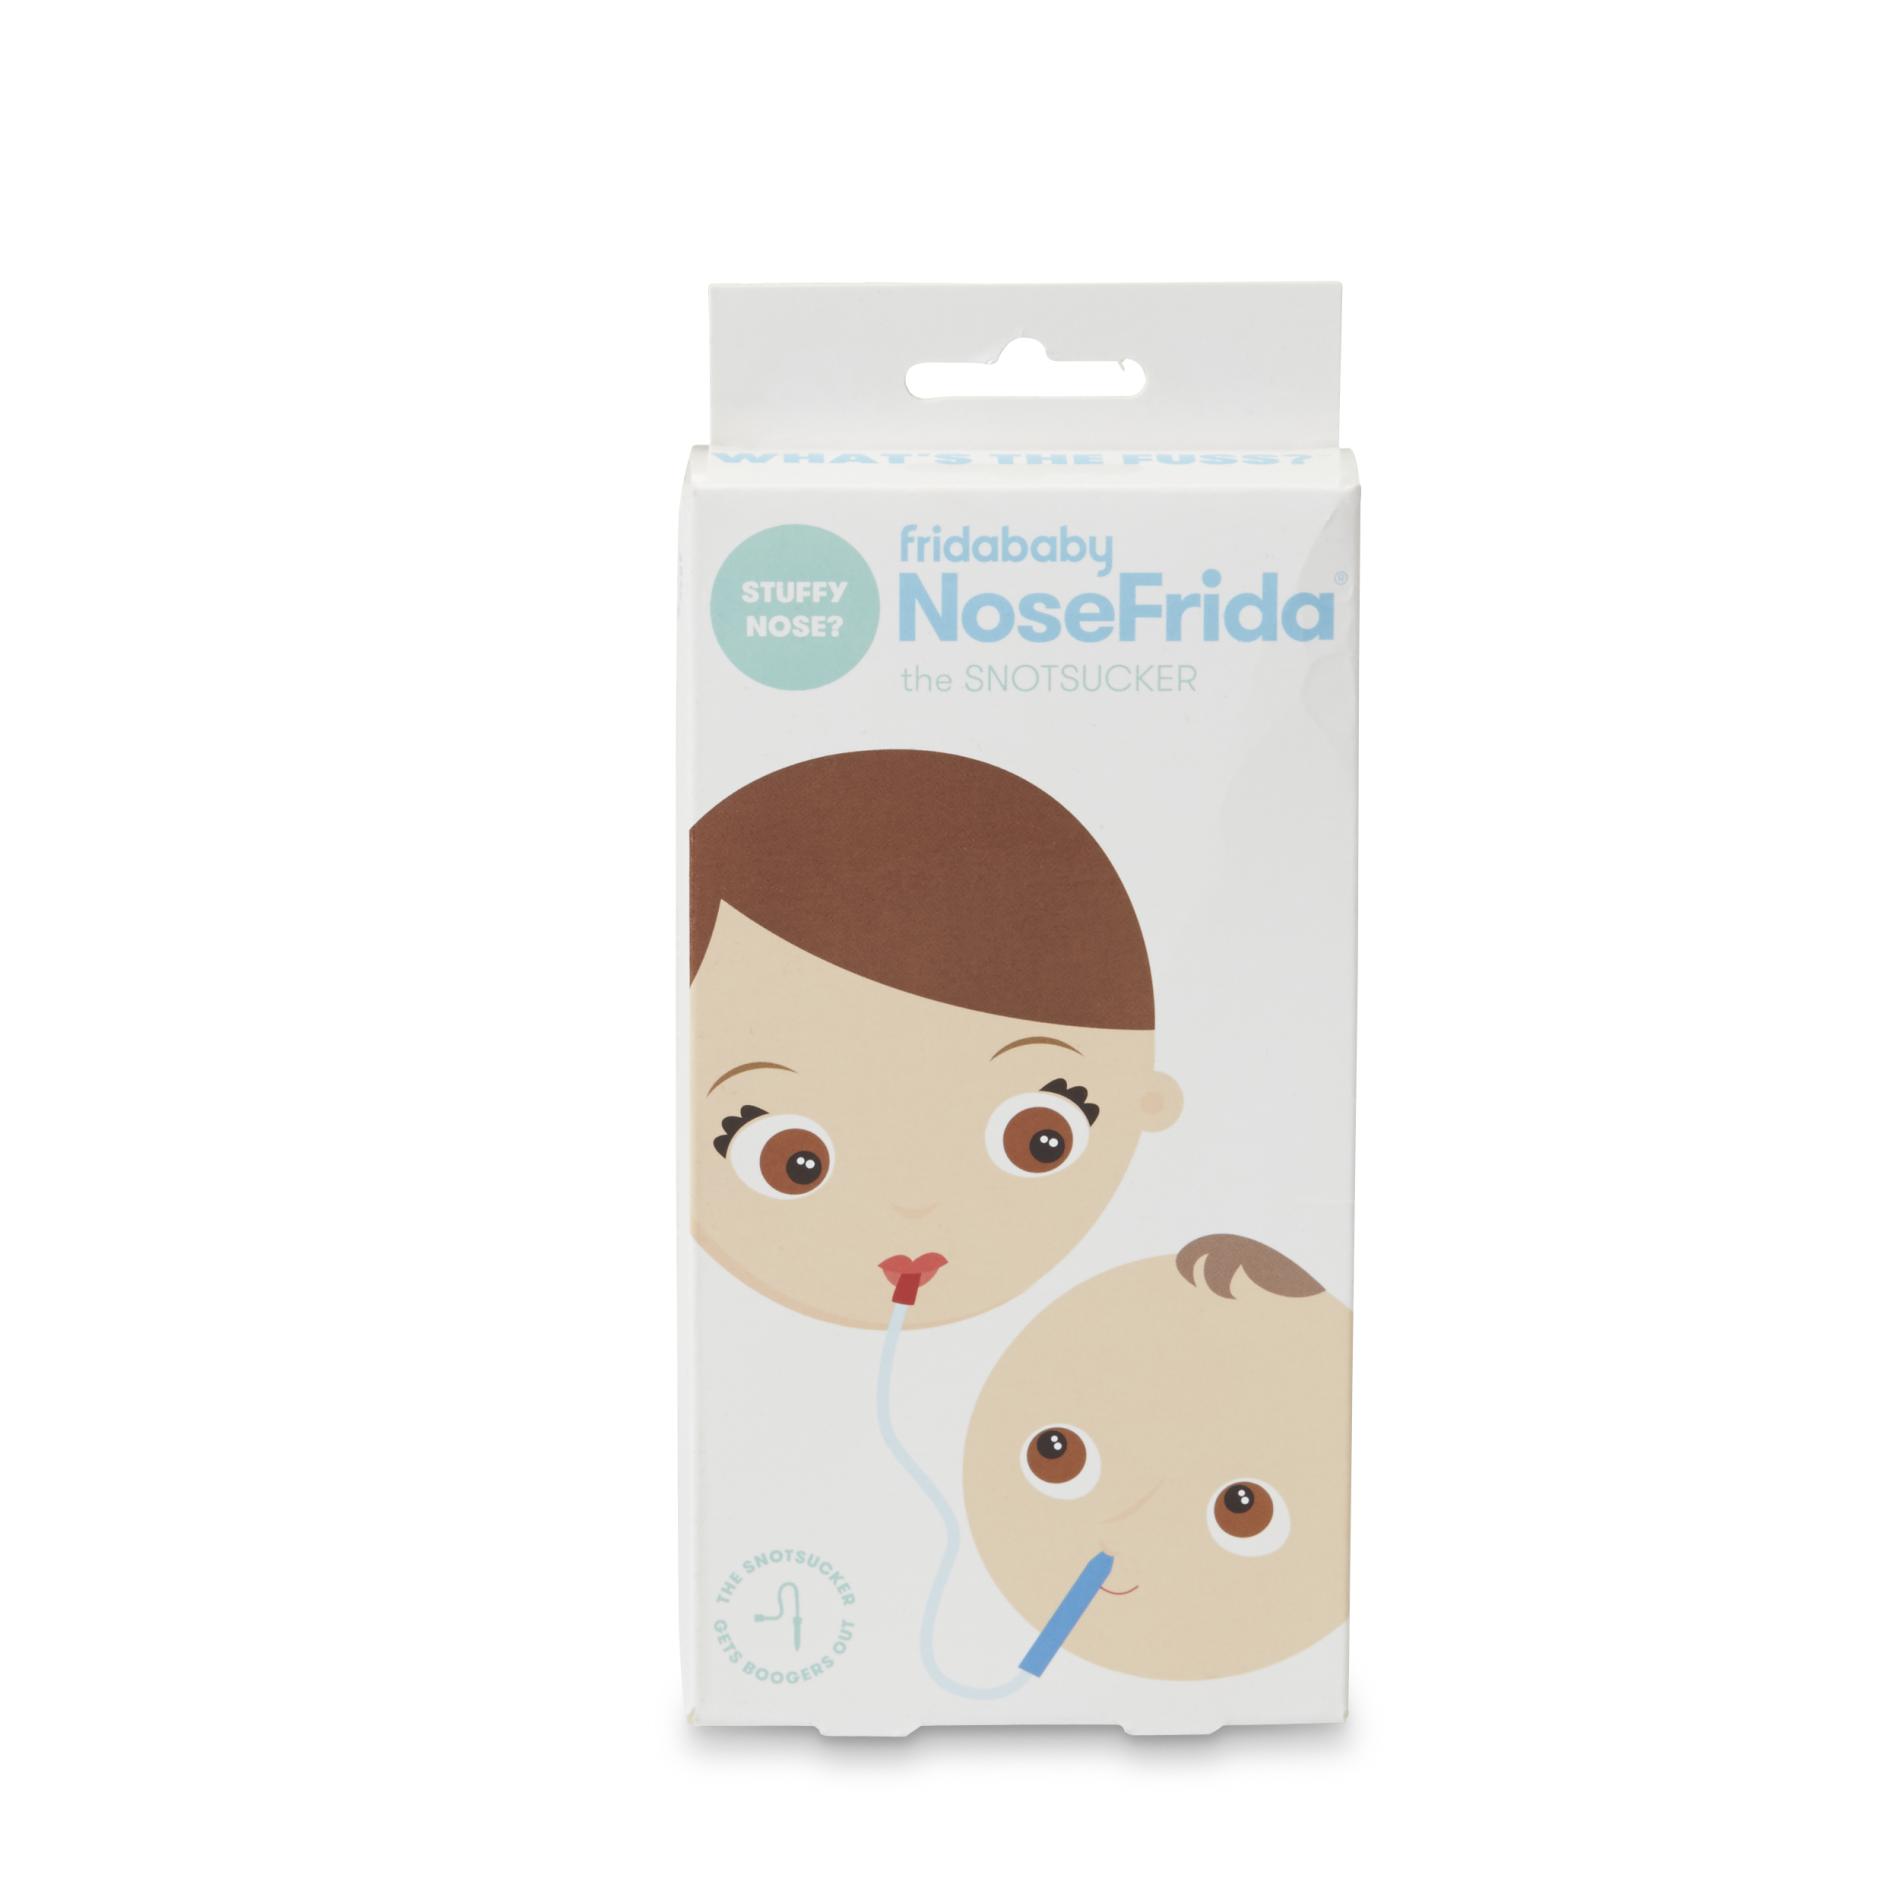 Fridababy NoseFrida the SnotSucker Nasal Aspirator